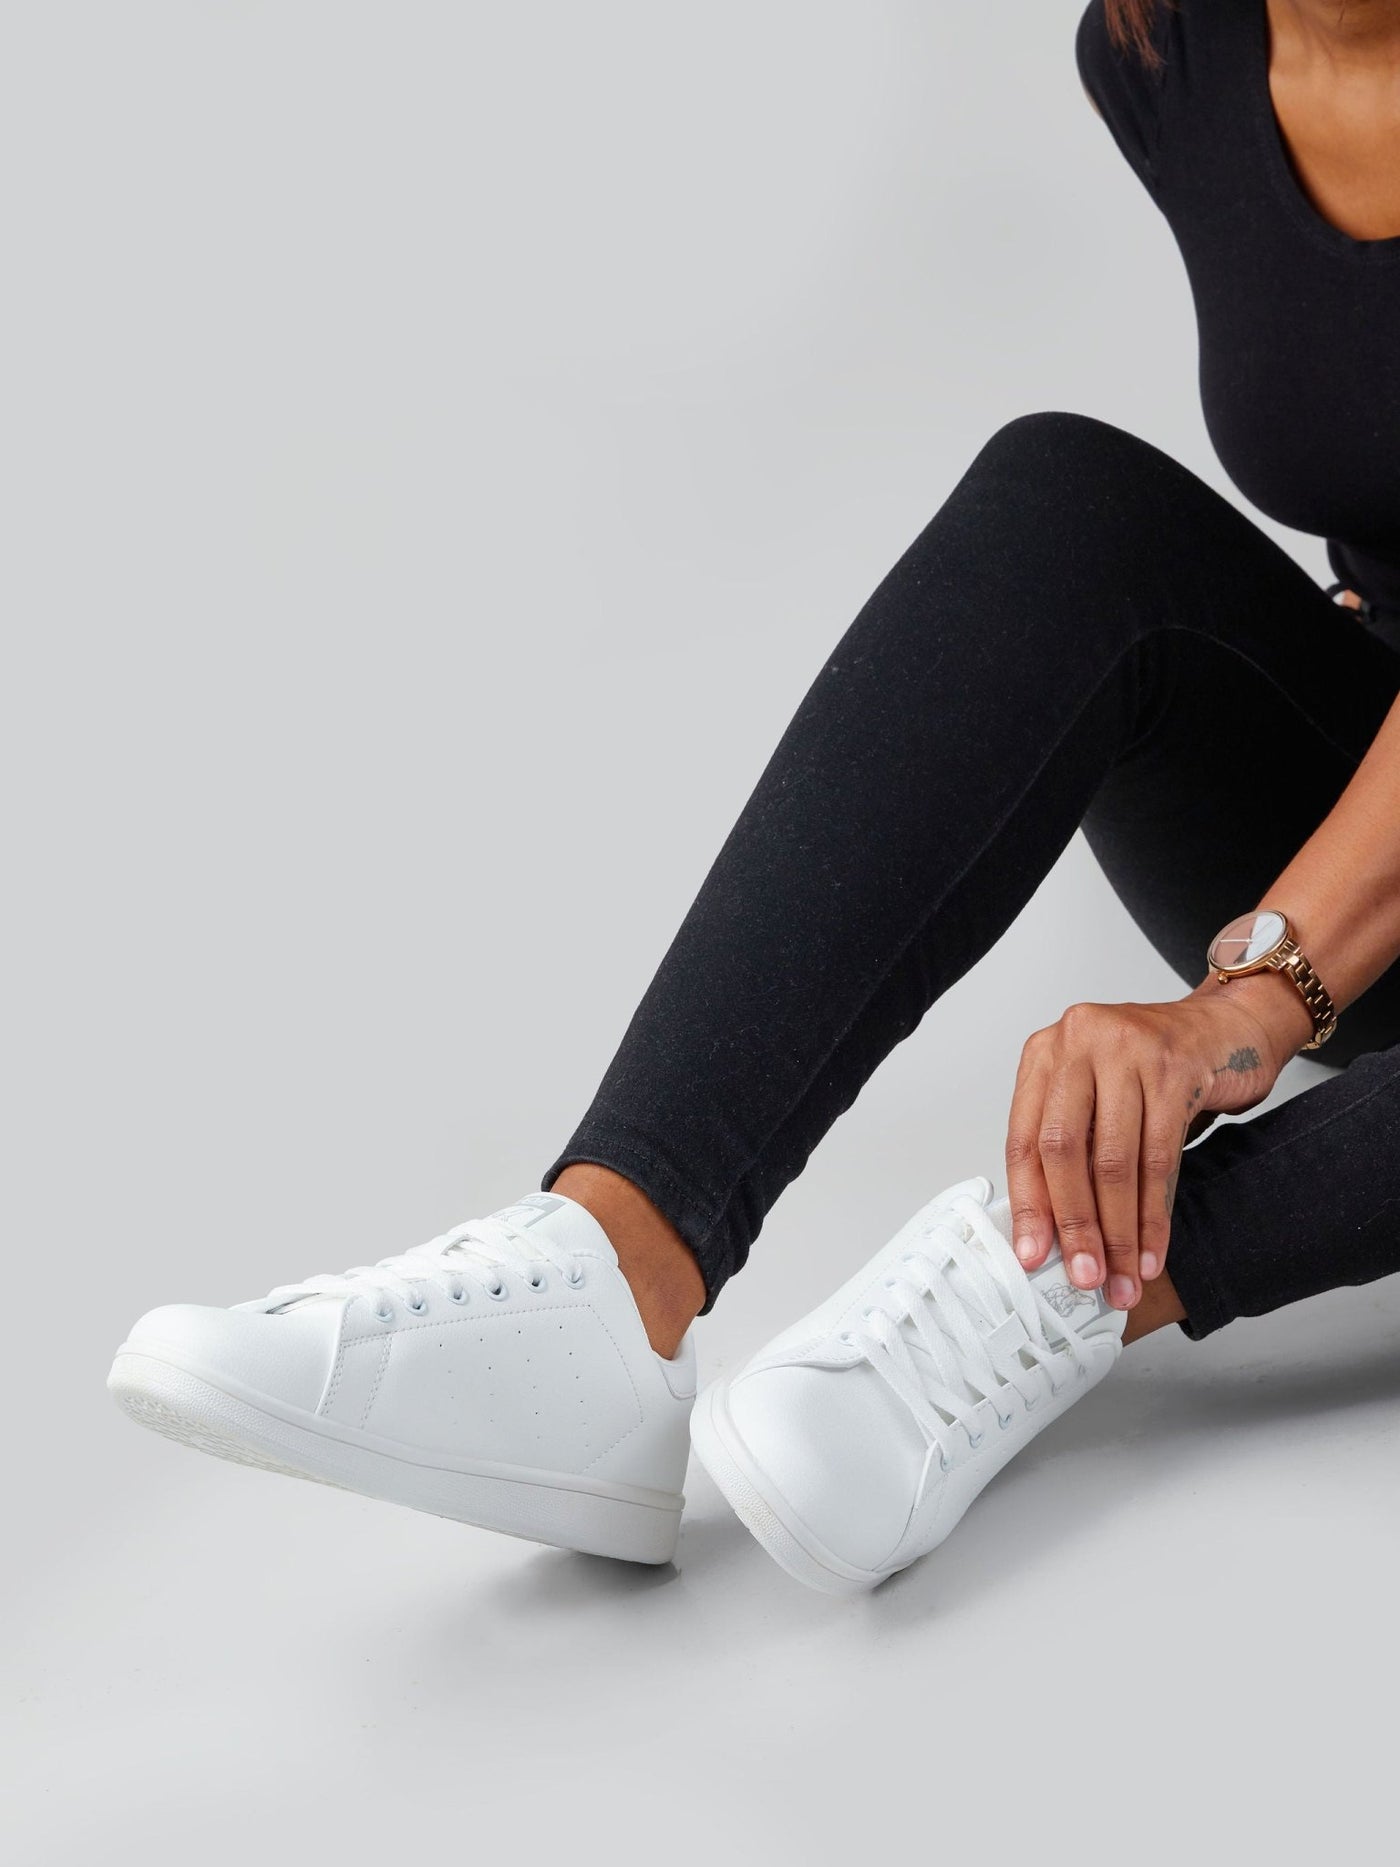 Ziatu Women's Plain Sneakers - White - Shopzetu